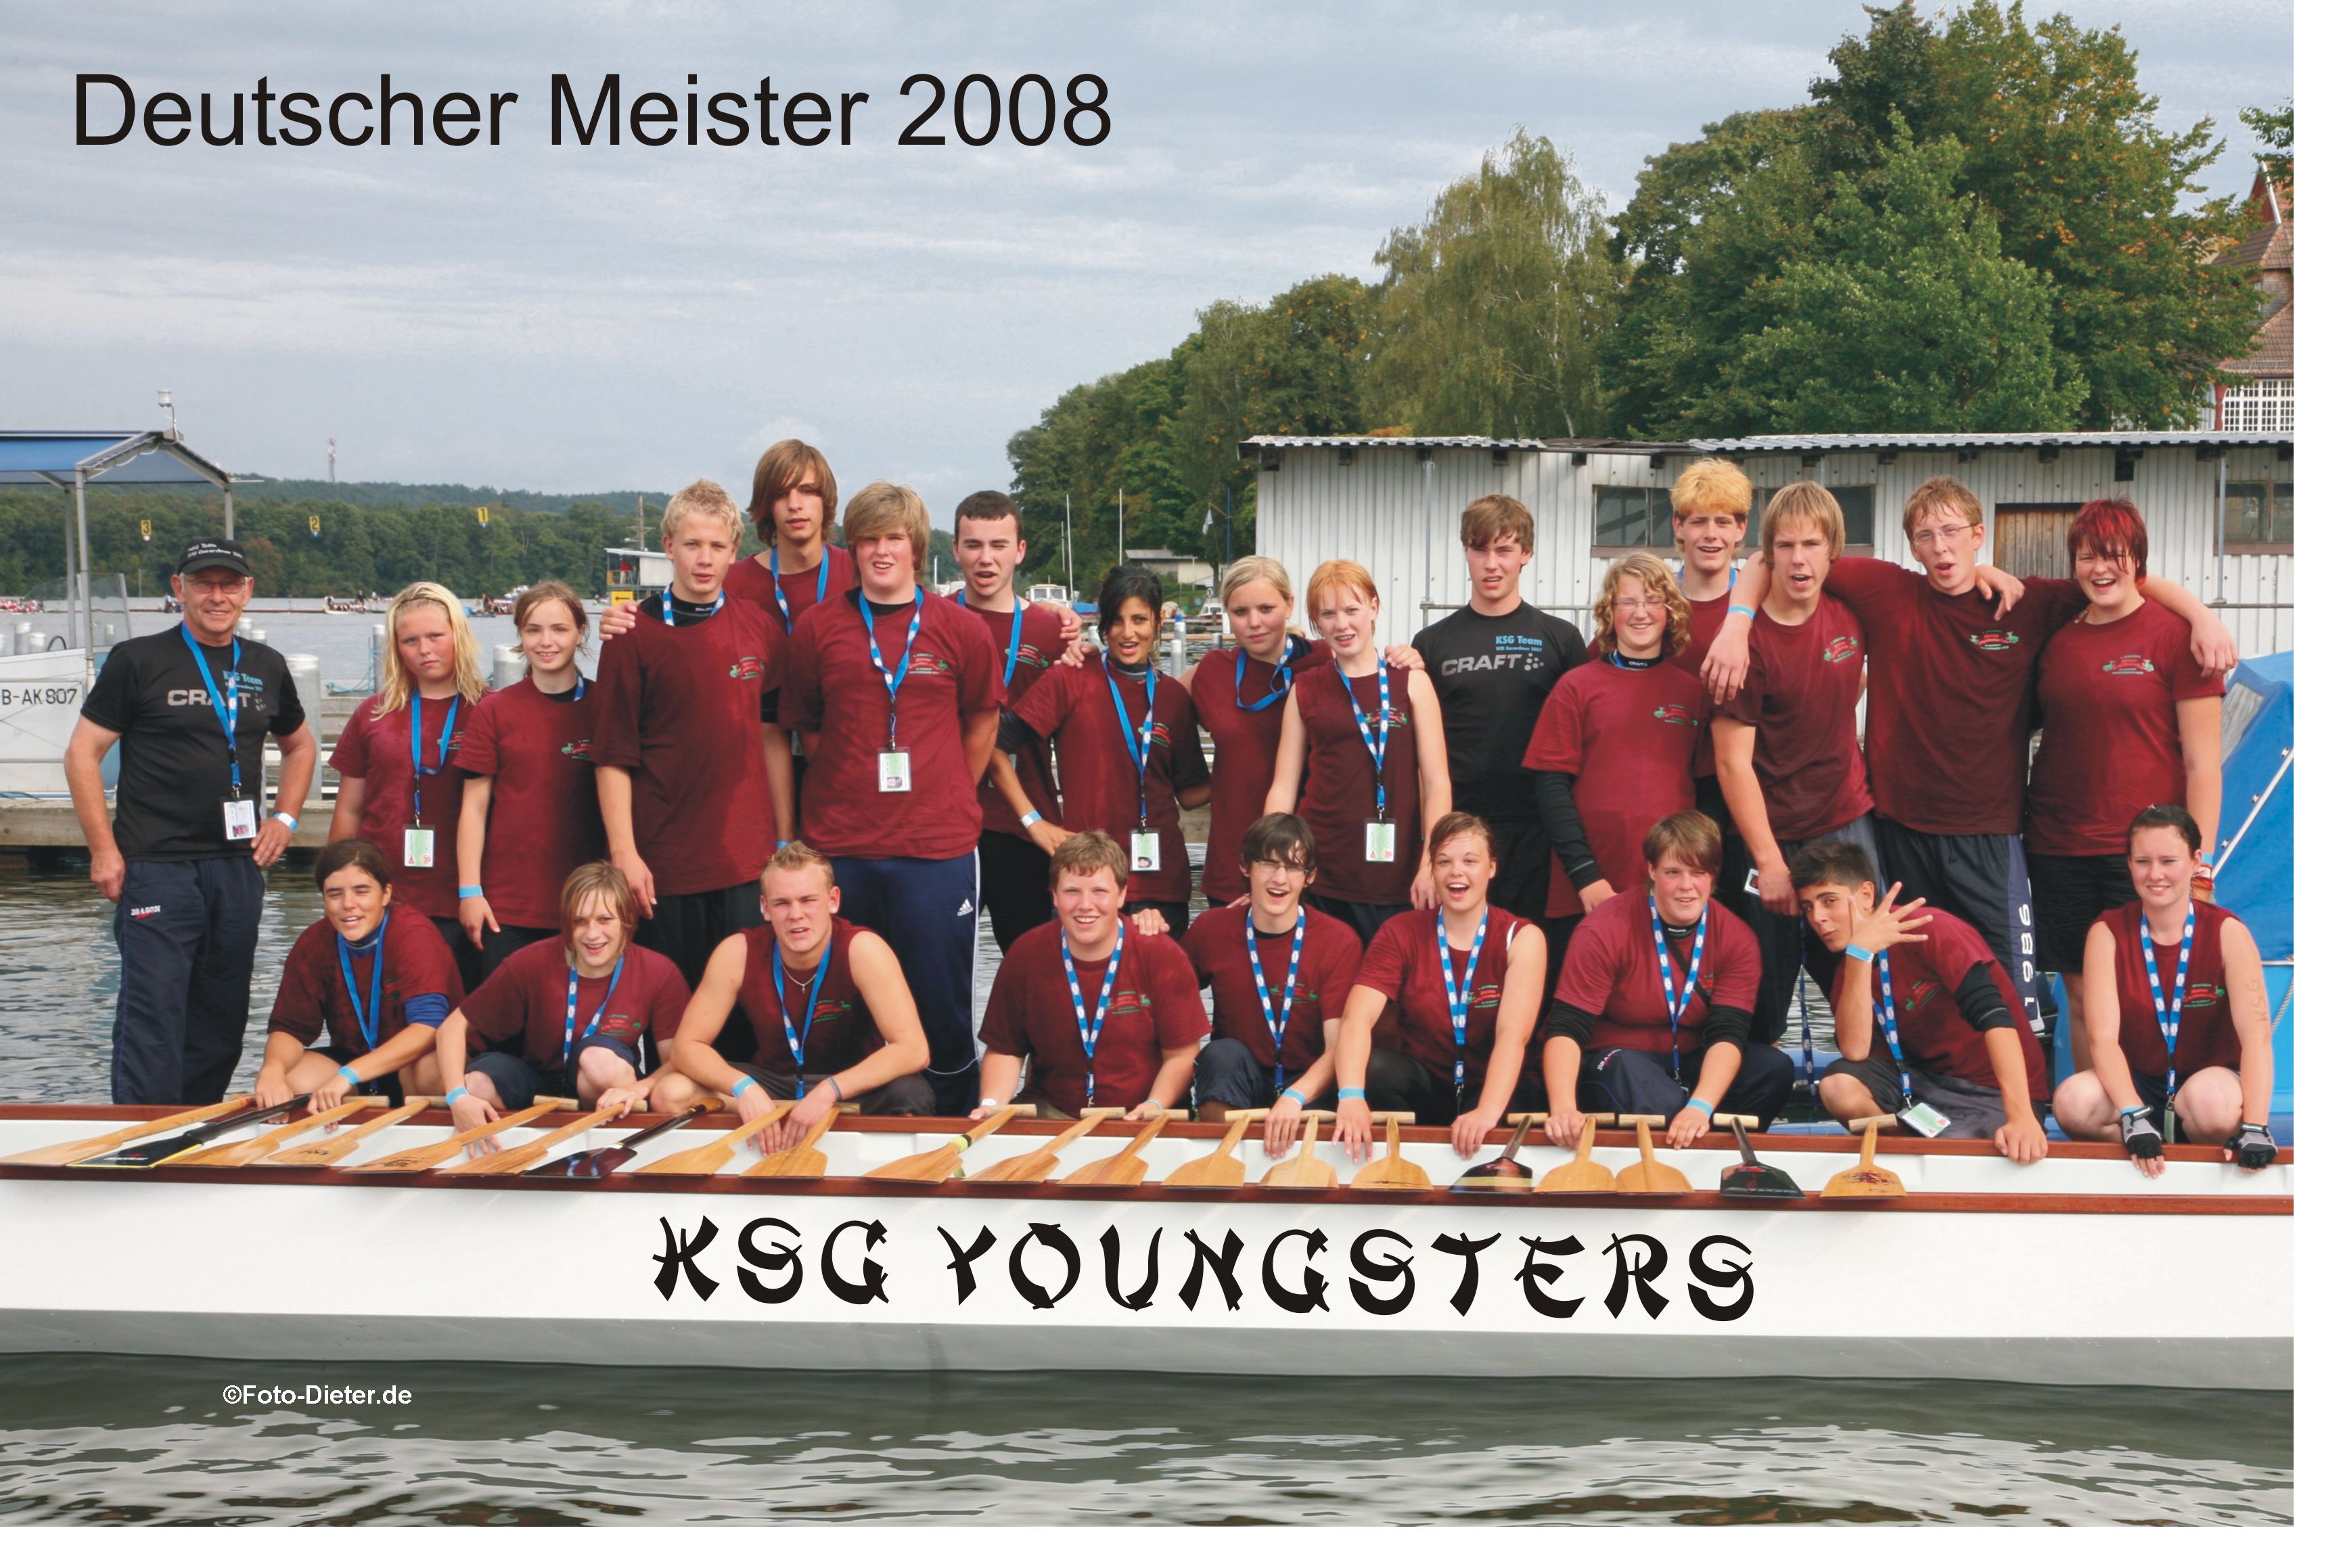 Deutsche Meister 2008